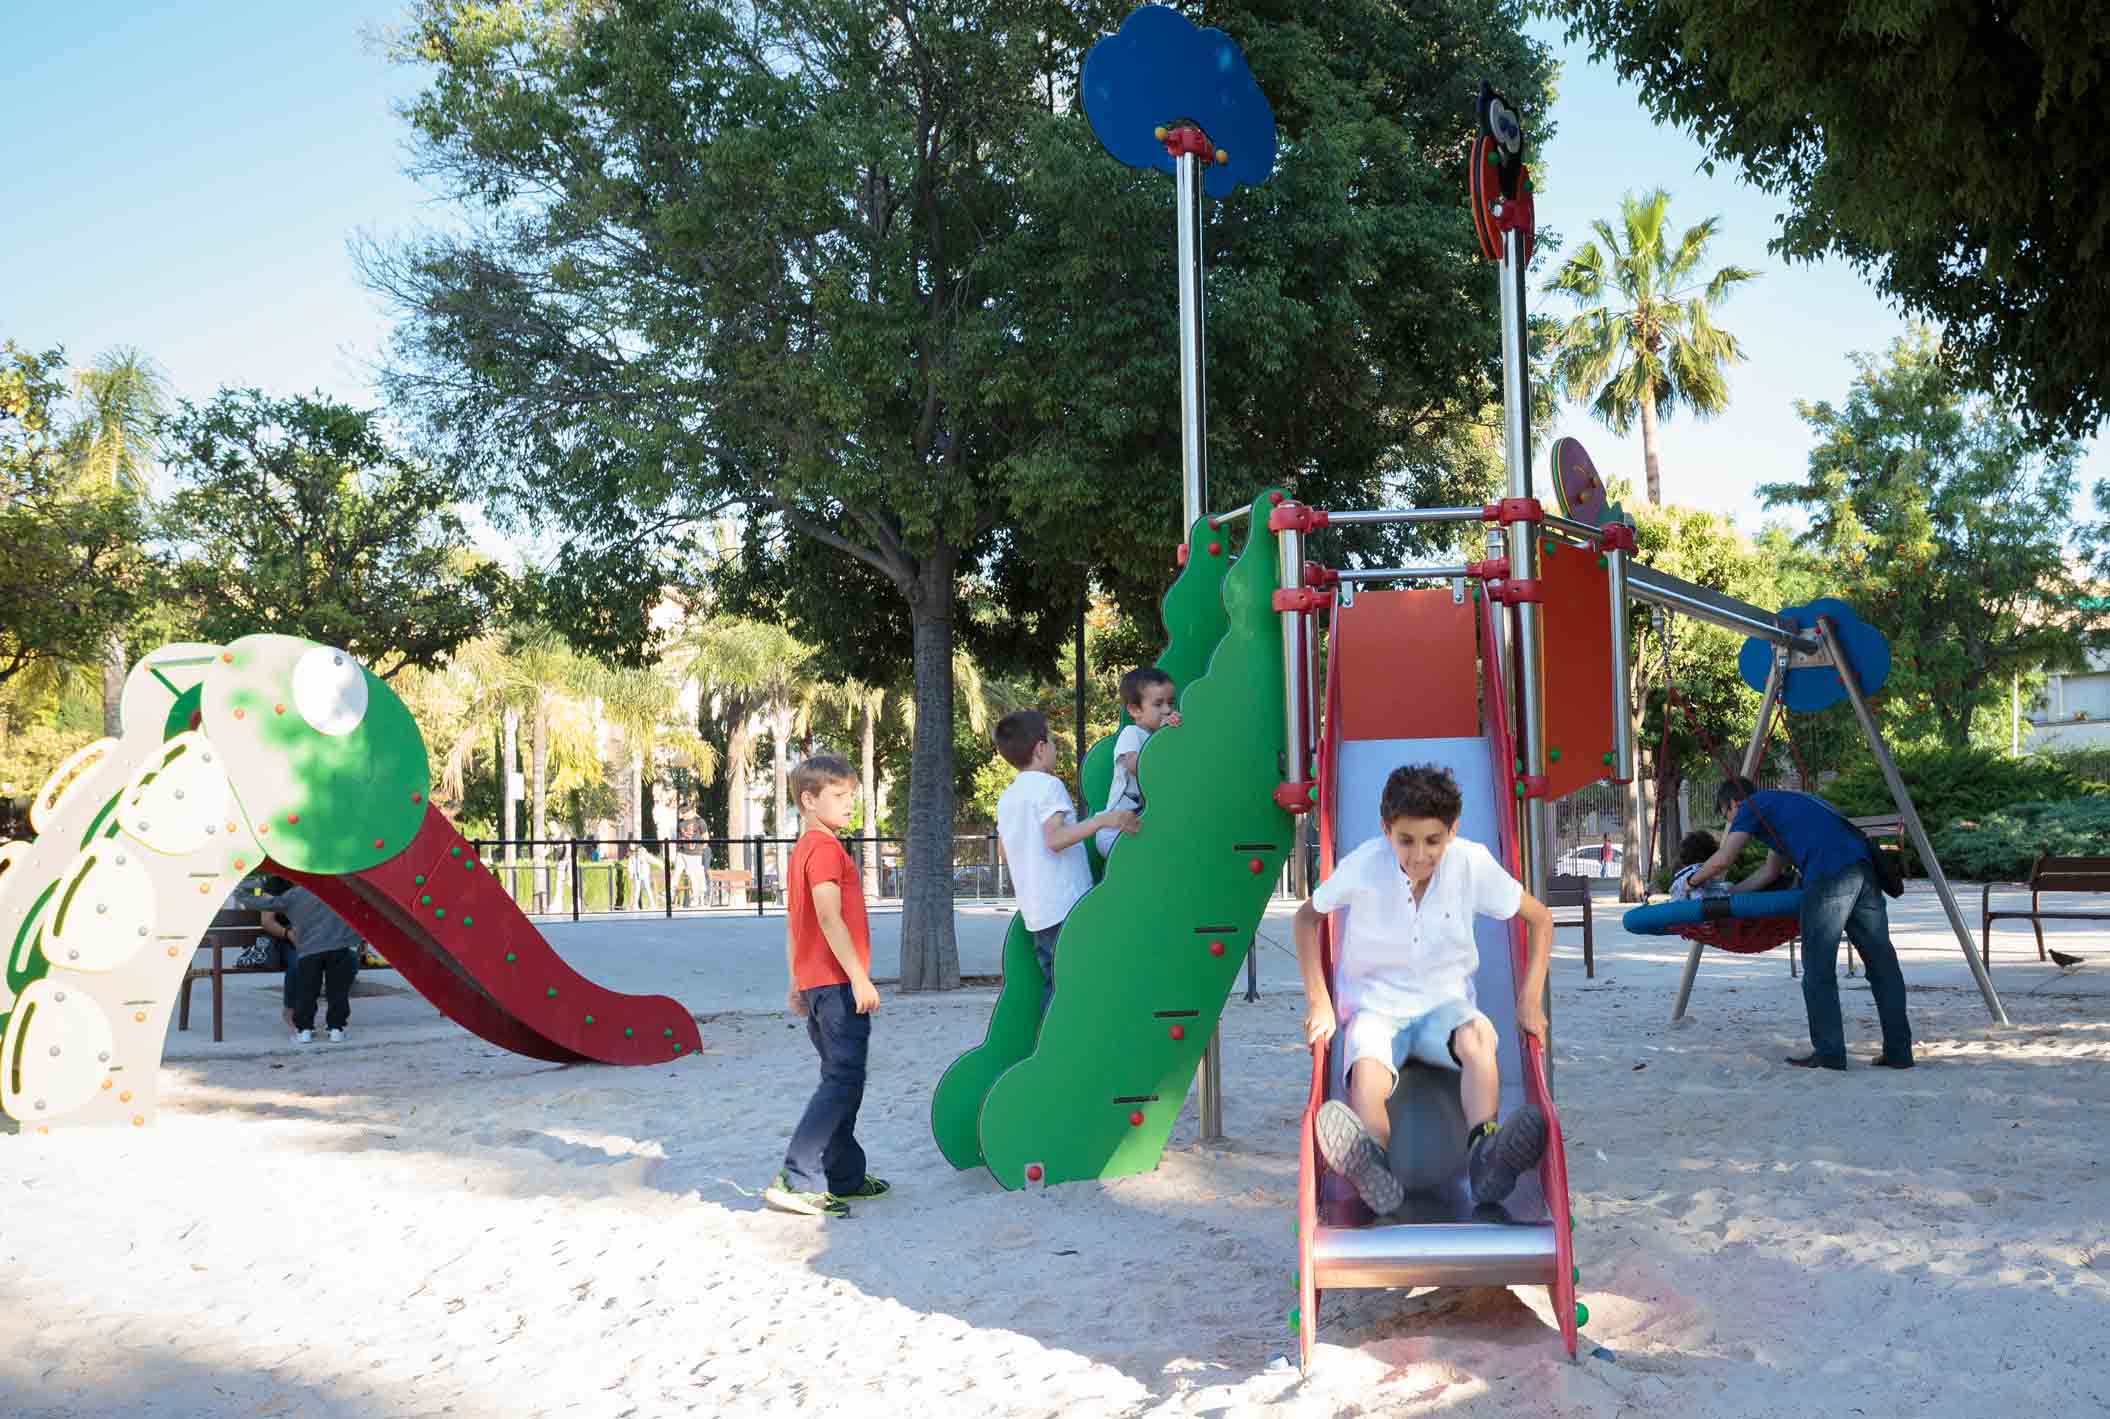 niños jugando en parque infantil con tobogán urbano